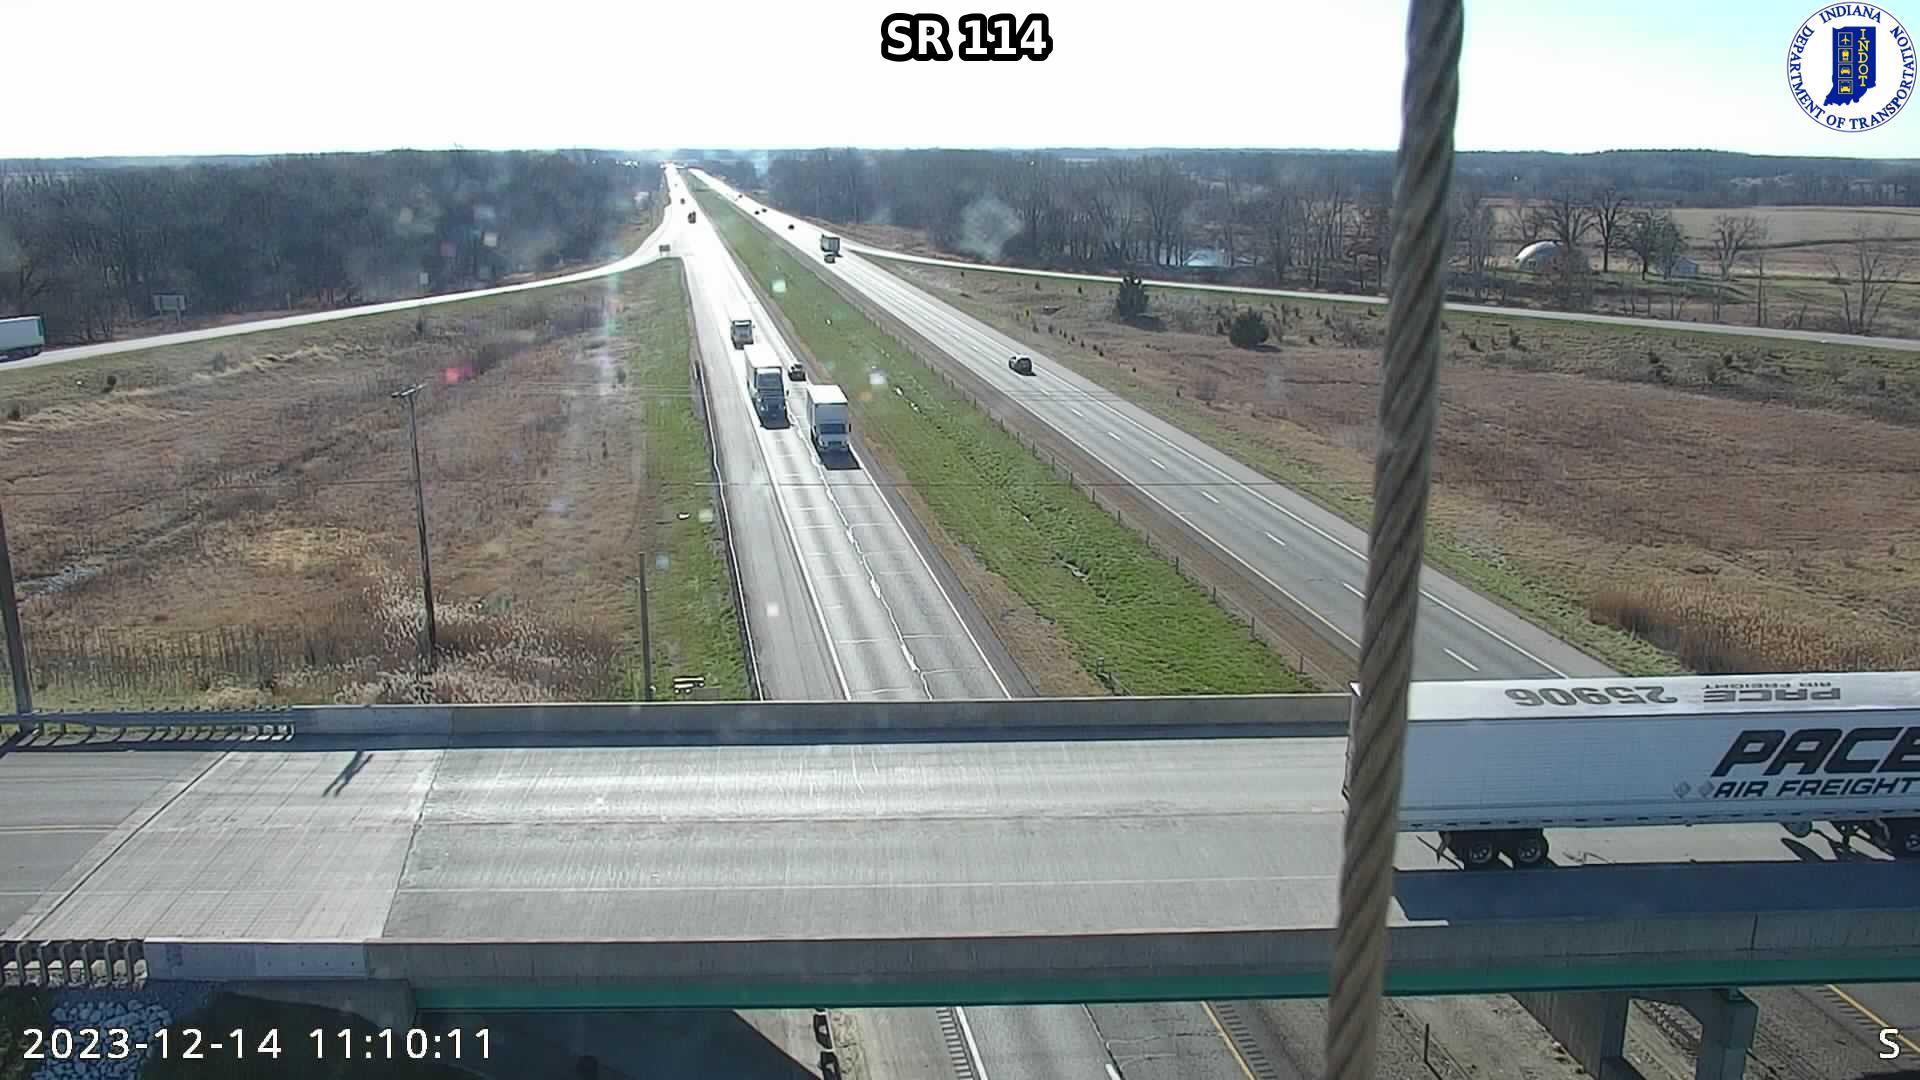 Rensselaer: I-65: SR 114 Traffic Camera